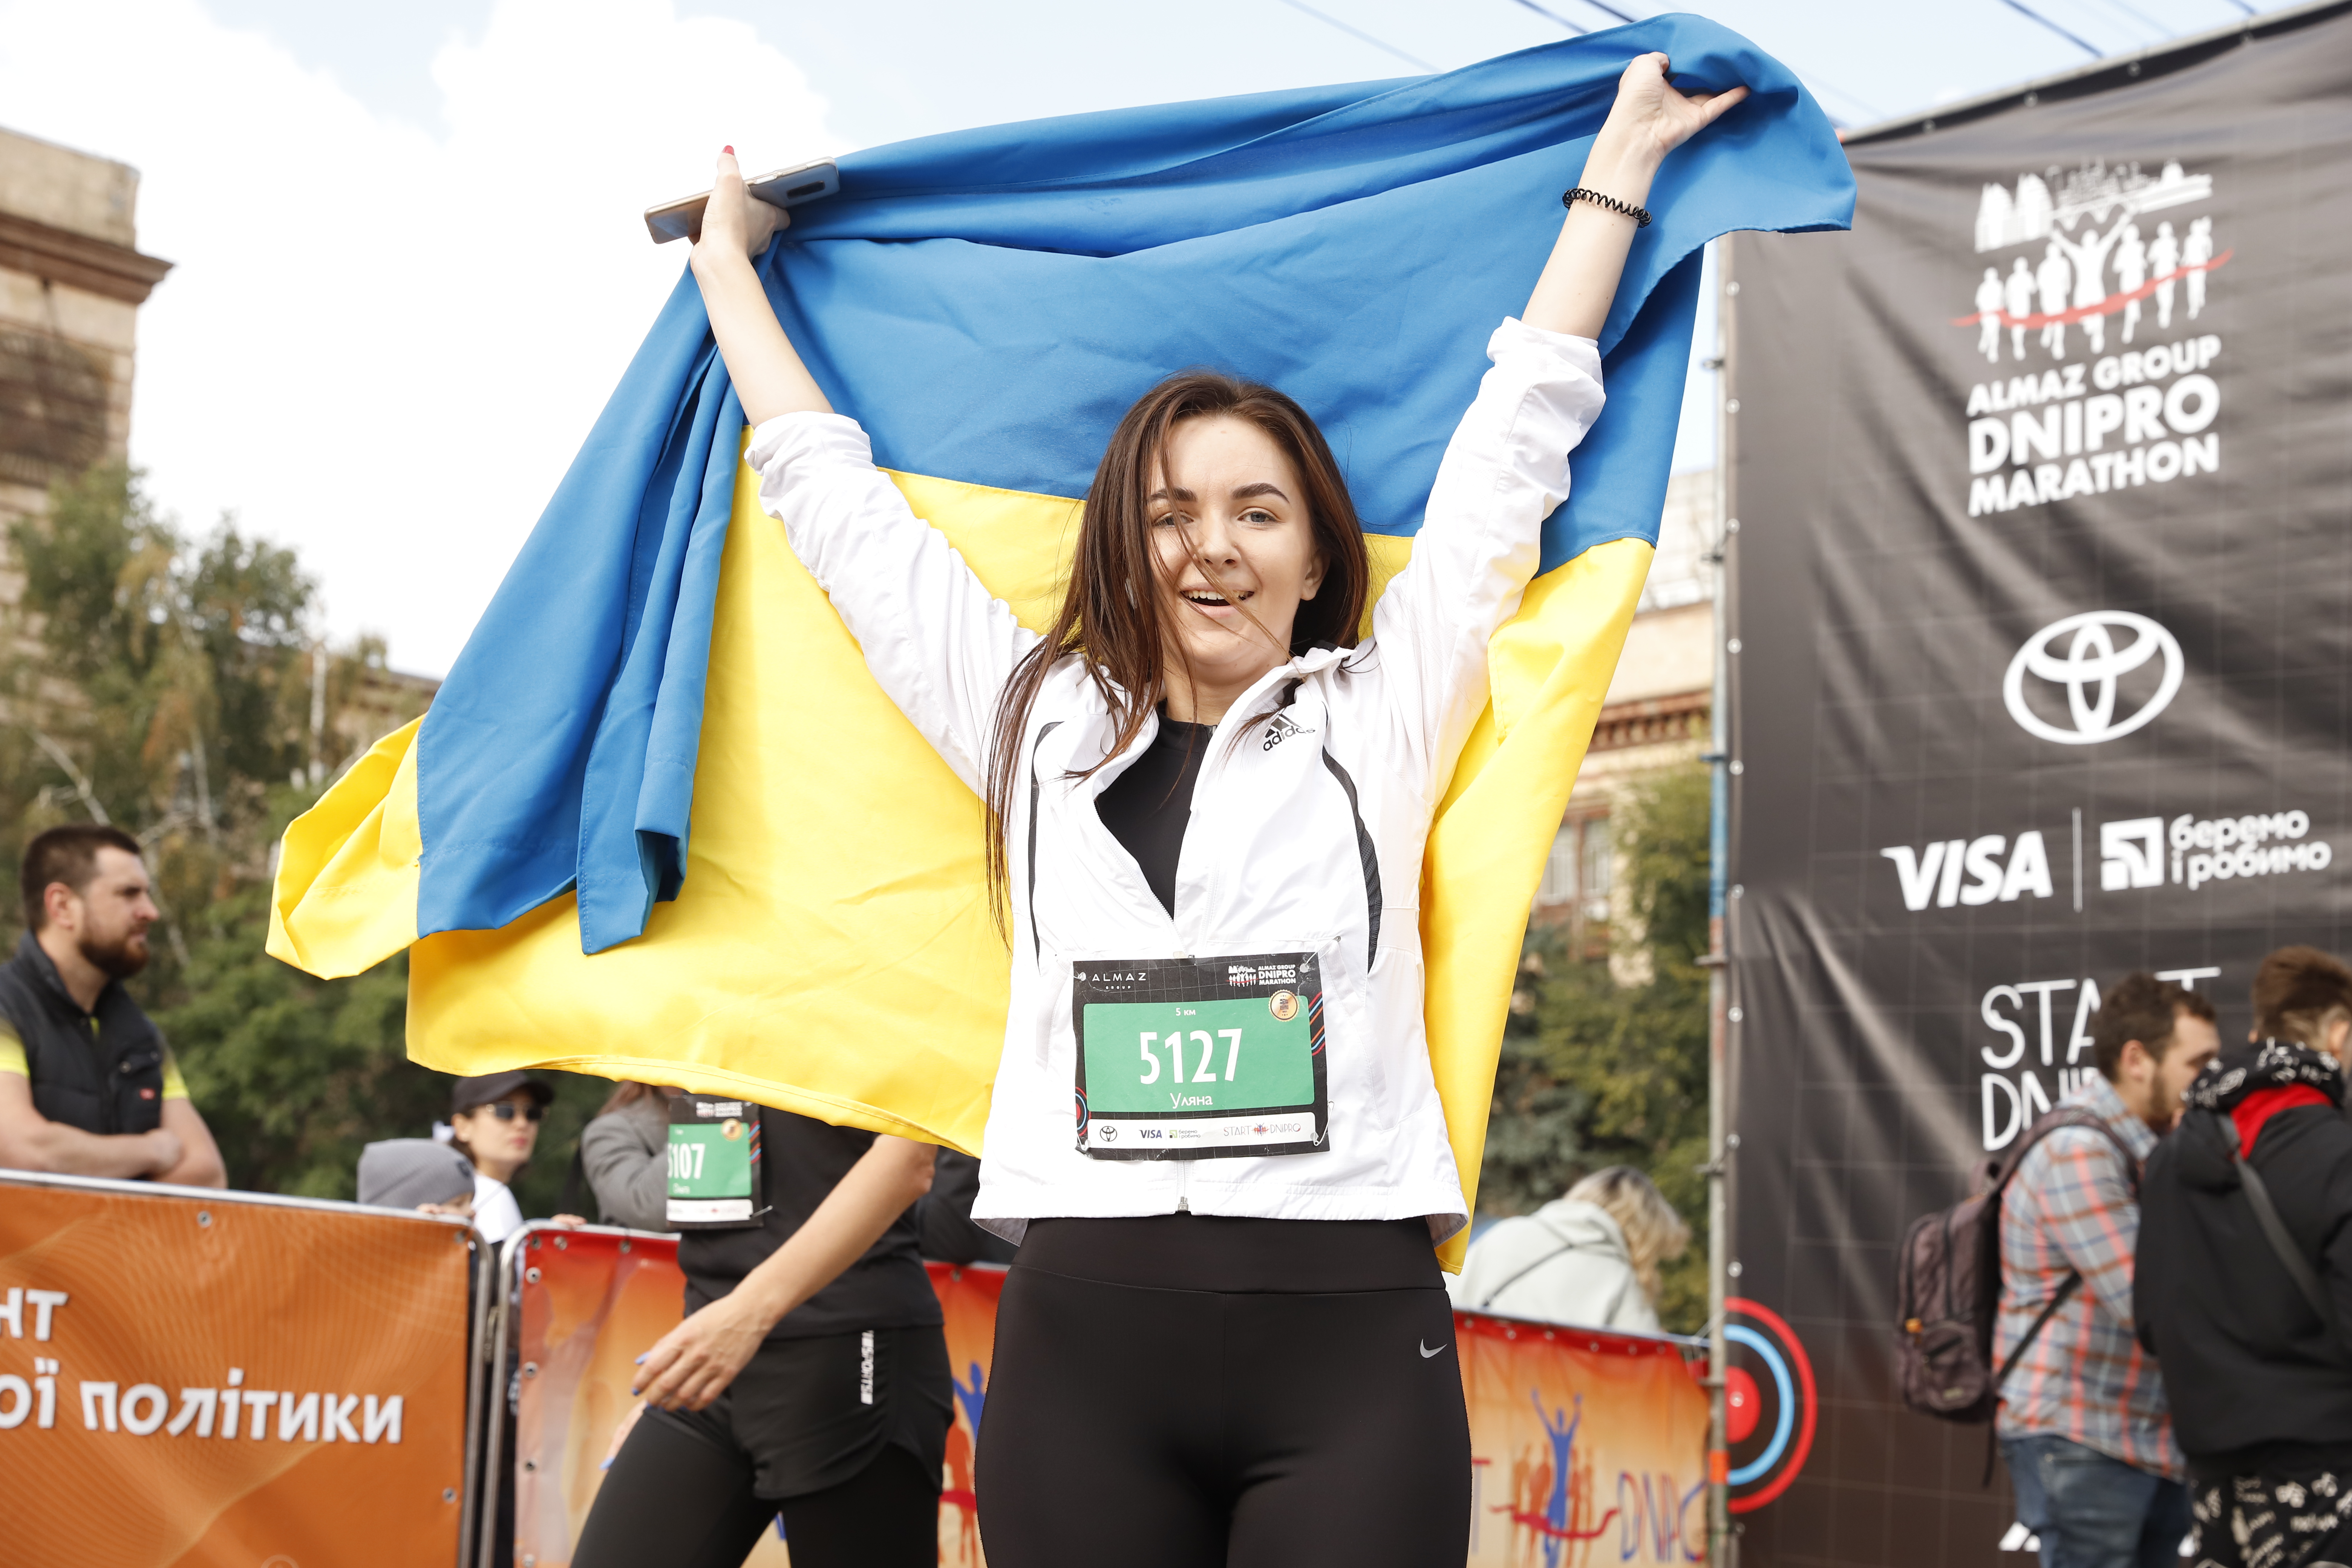   !  !:  Գ    5- Almaz Group Dnipro Marathon